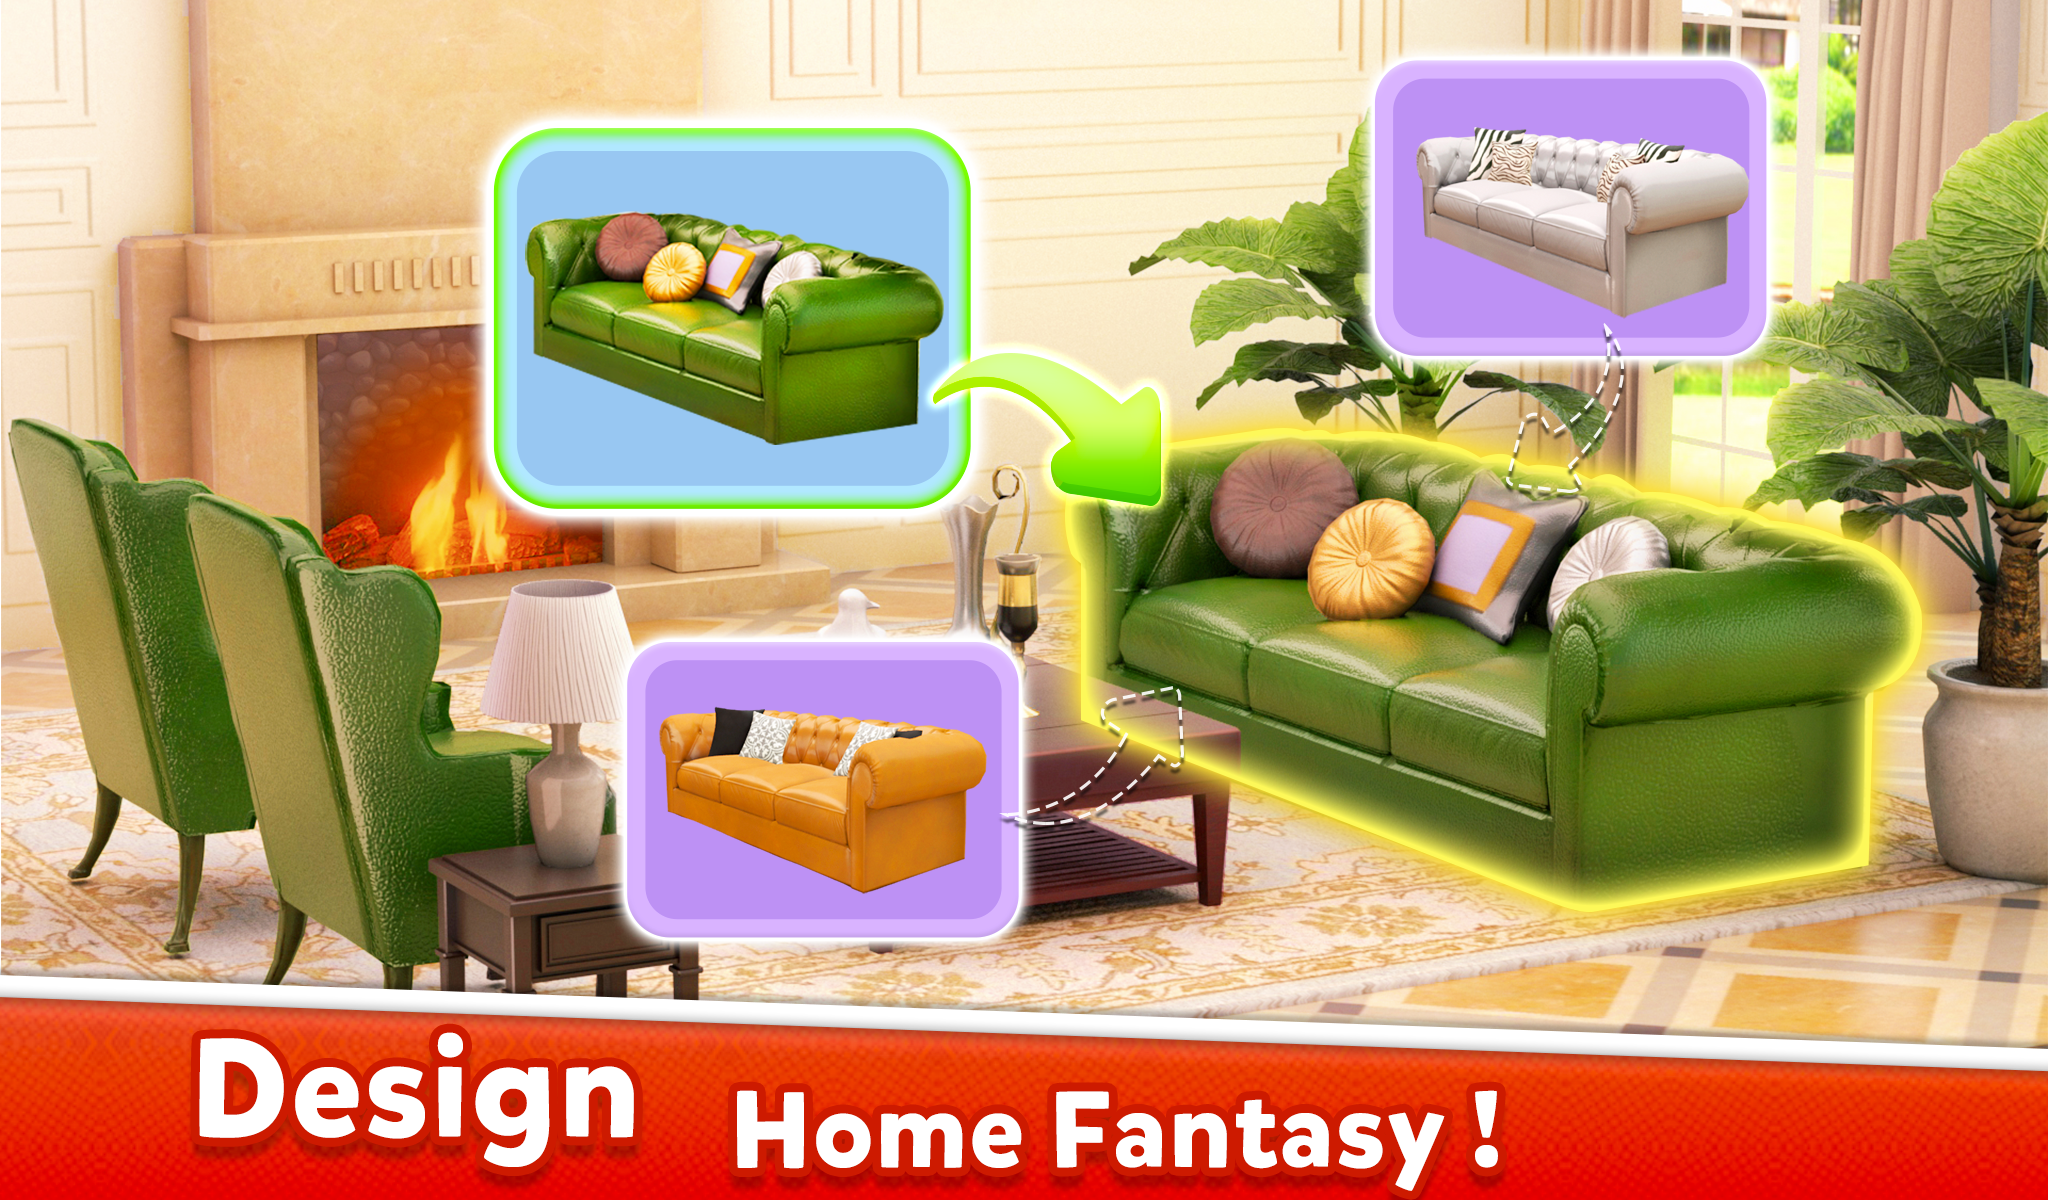 Home Fantasy - Home Designのキャプチャ